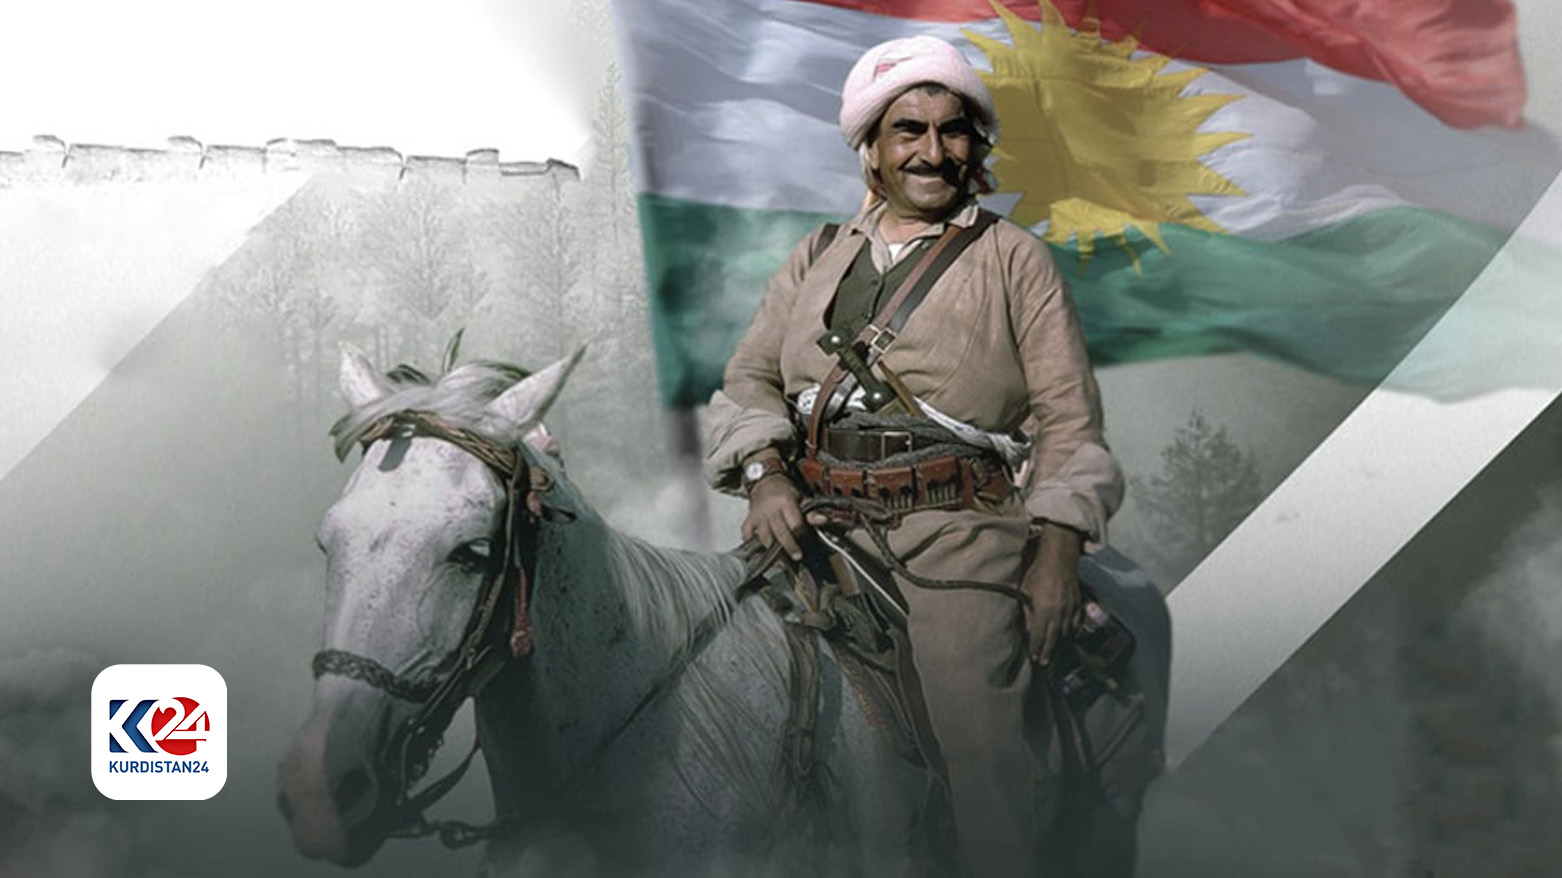 ملا مصطفی بارزانی، رهبر جنبش رهایی‌بخش مردم کوردستان